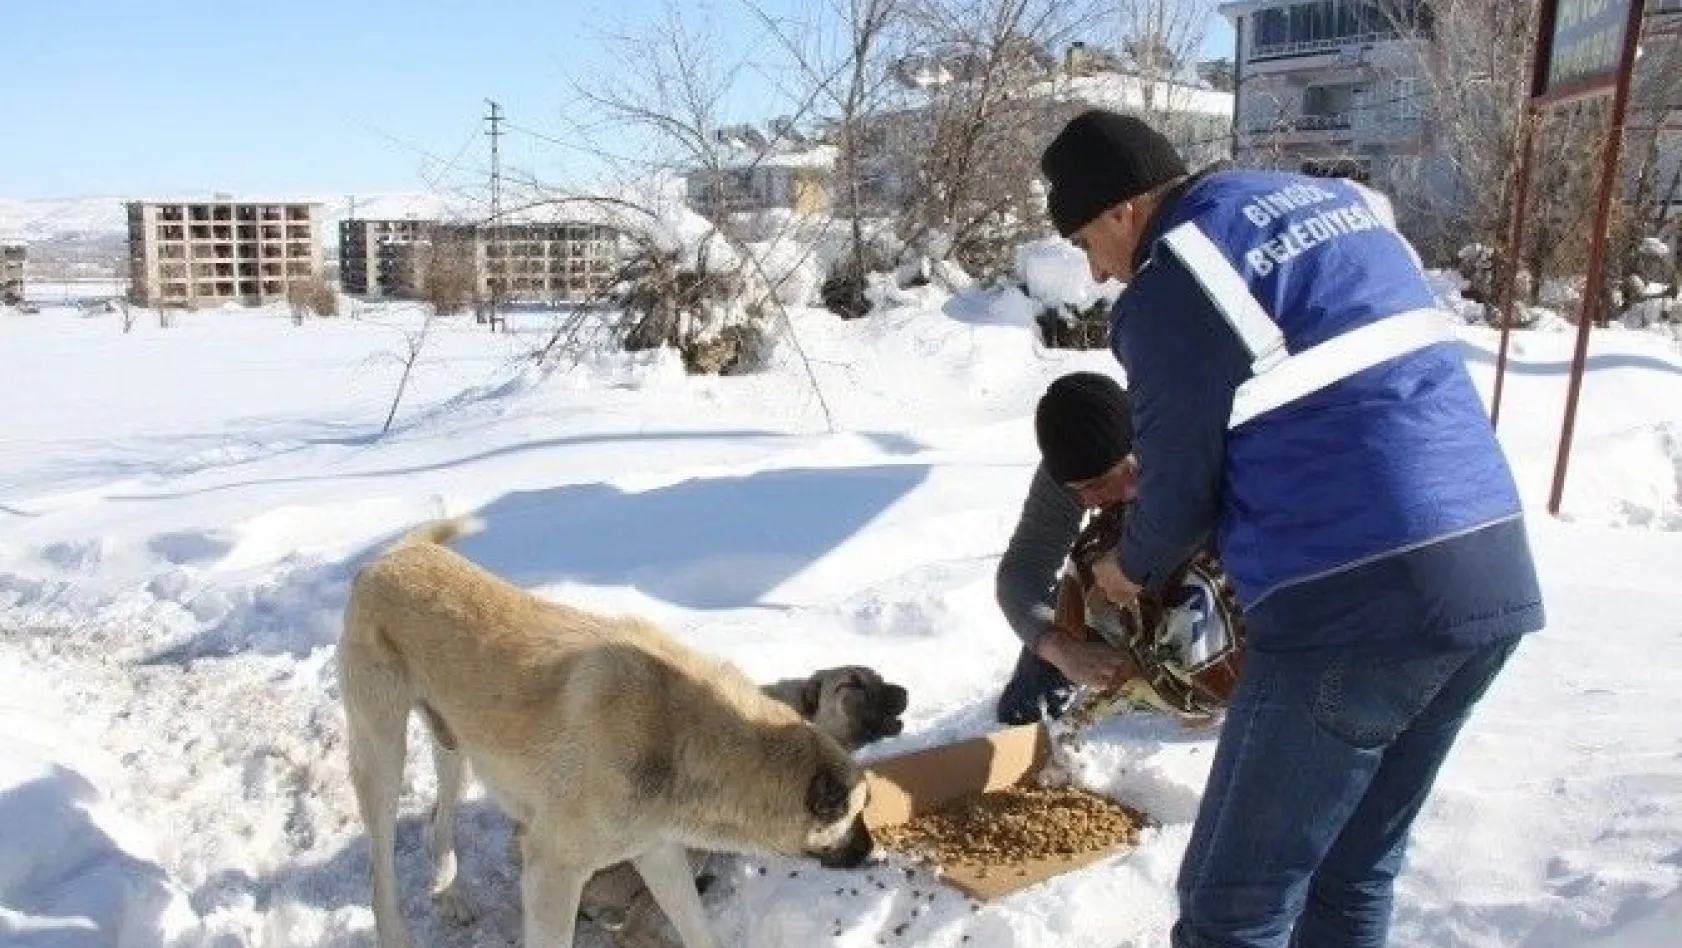 Bingöl Belediyesi, sokak hayvanları için doğaya yem bıraktı
